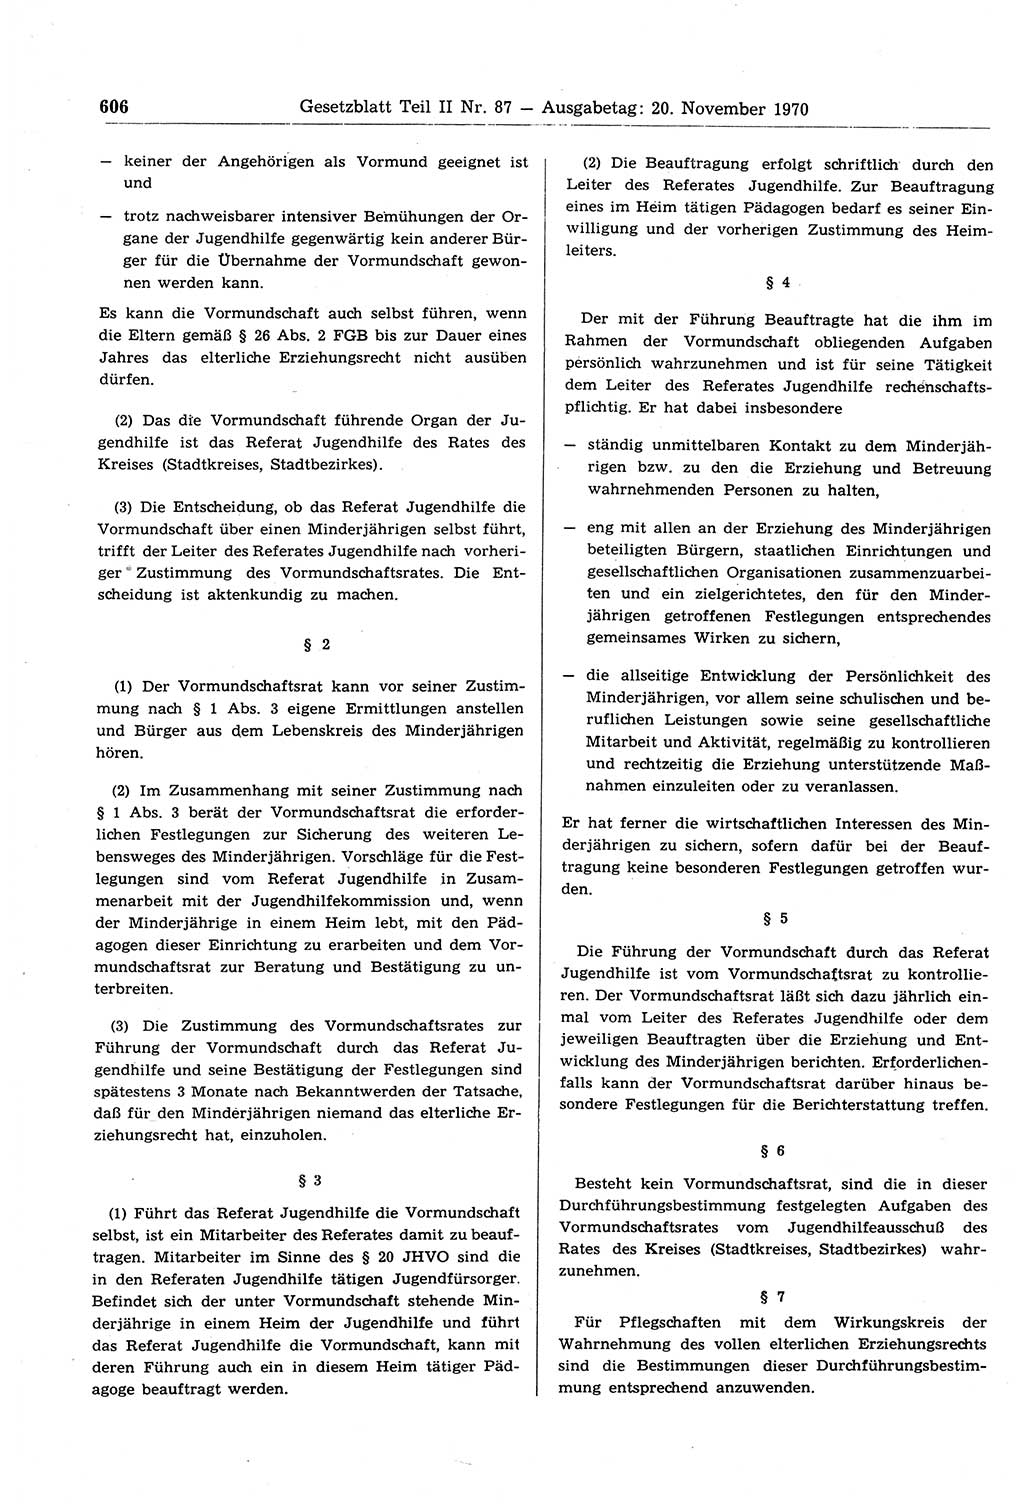 Gesetzblatt (GBl.) der Deutschen Demokratischen Republik (DDR) Teil ⅠⅠ 1970, Seite 606 (GBl. DDR ⅠⅠ 1970, S. 606)